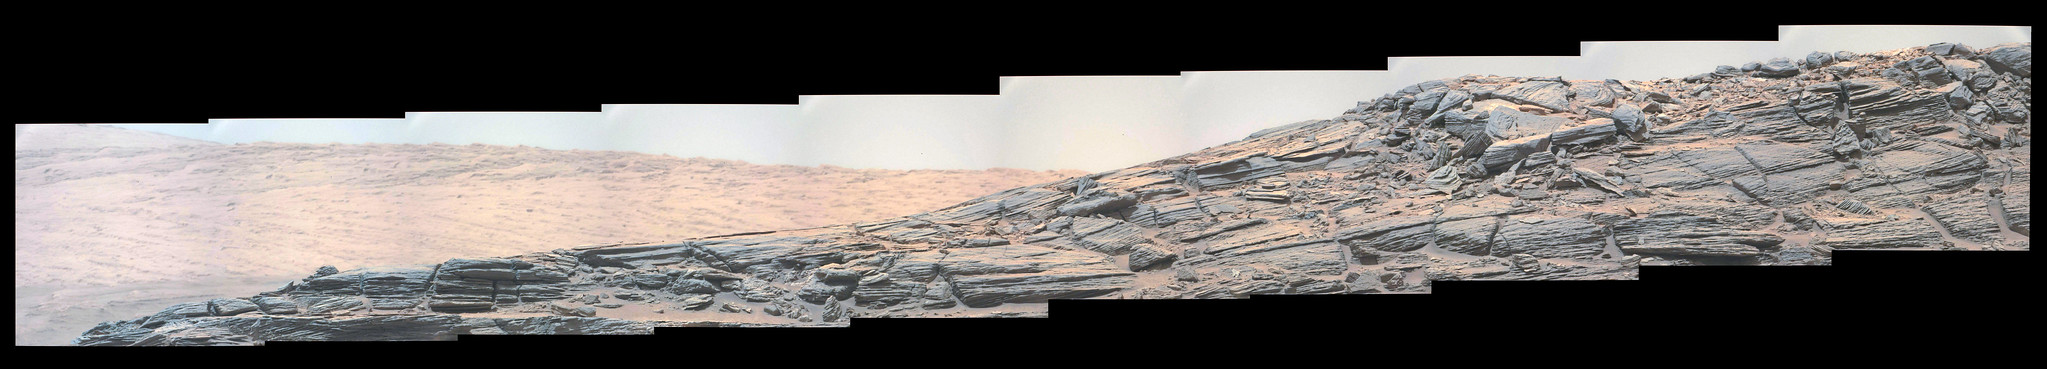 Curiosity sol 1087